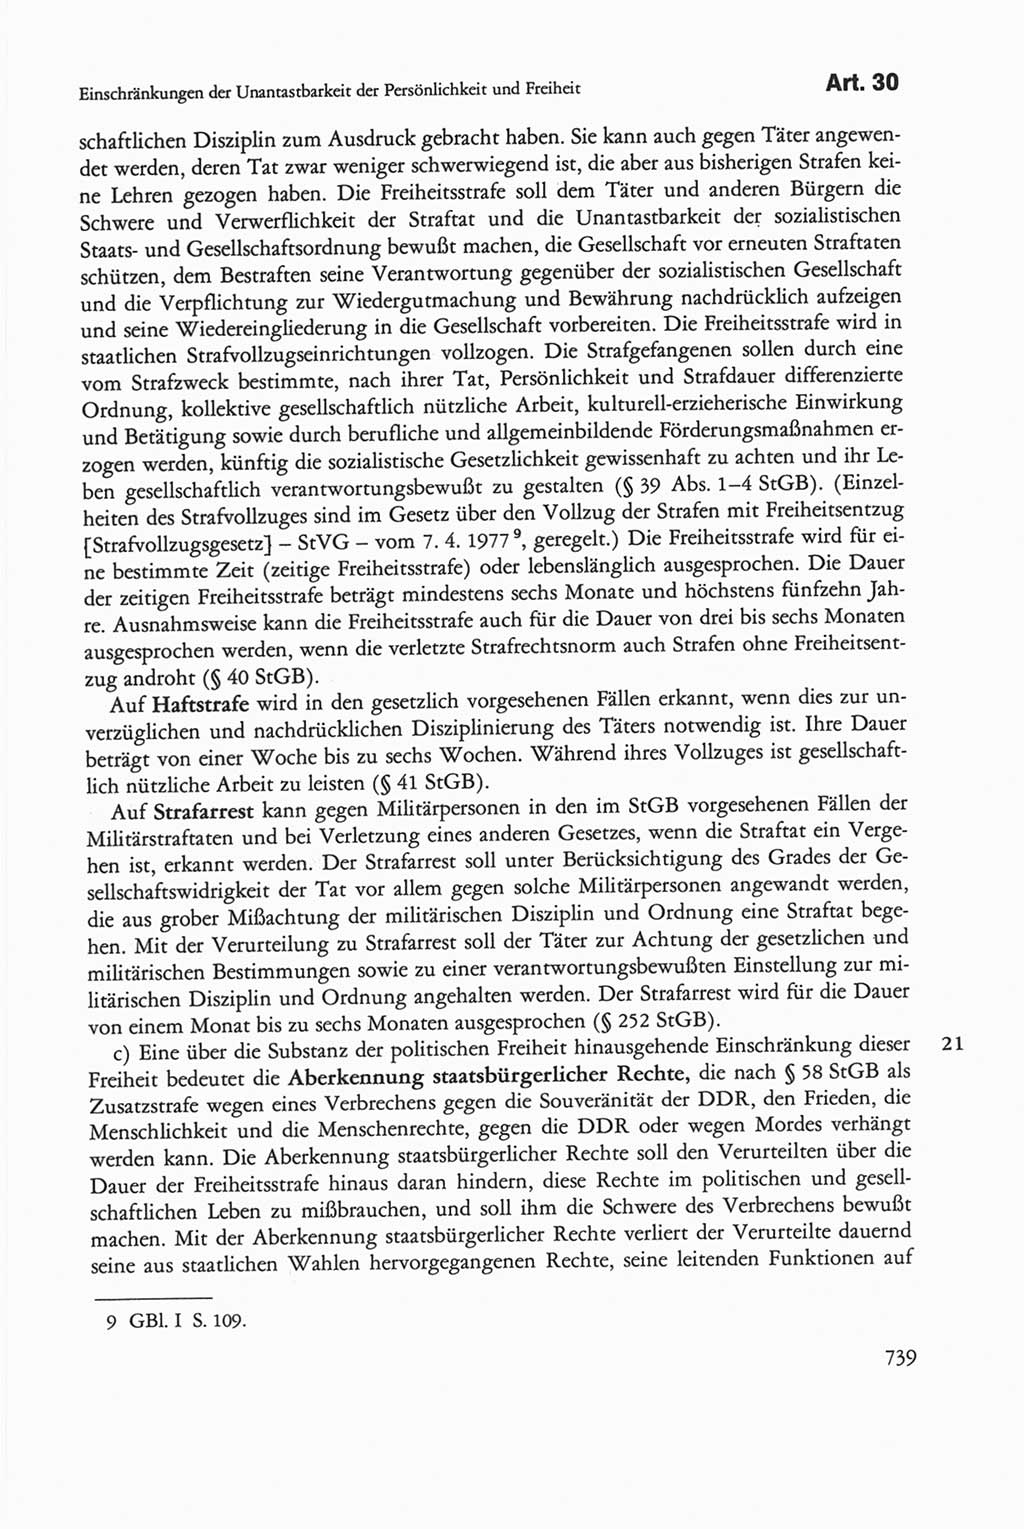 Die sozialistische Verfassung der Deutschen Demokratischen Republik (DDR), Kommentar 1982, Seite 739 (Soz. Verf. DDR Komm. 1982, S. 739)